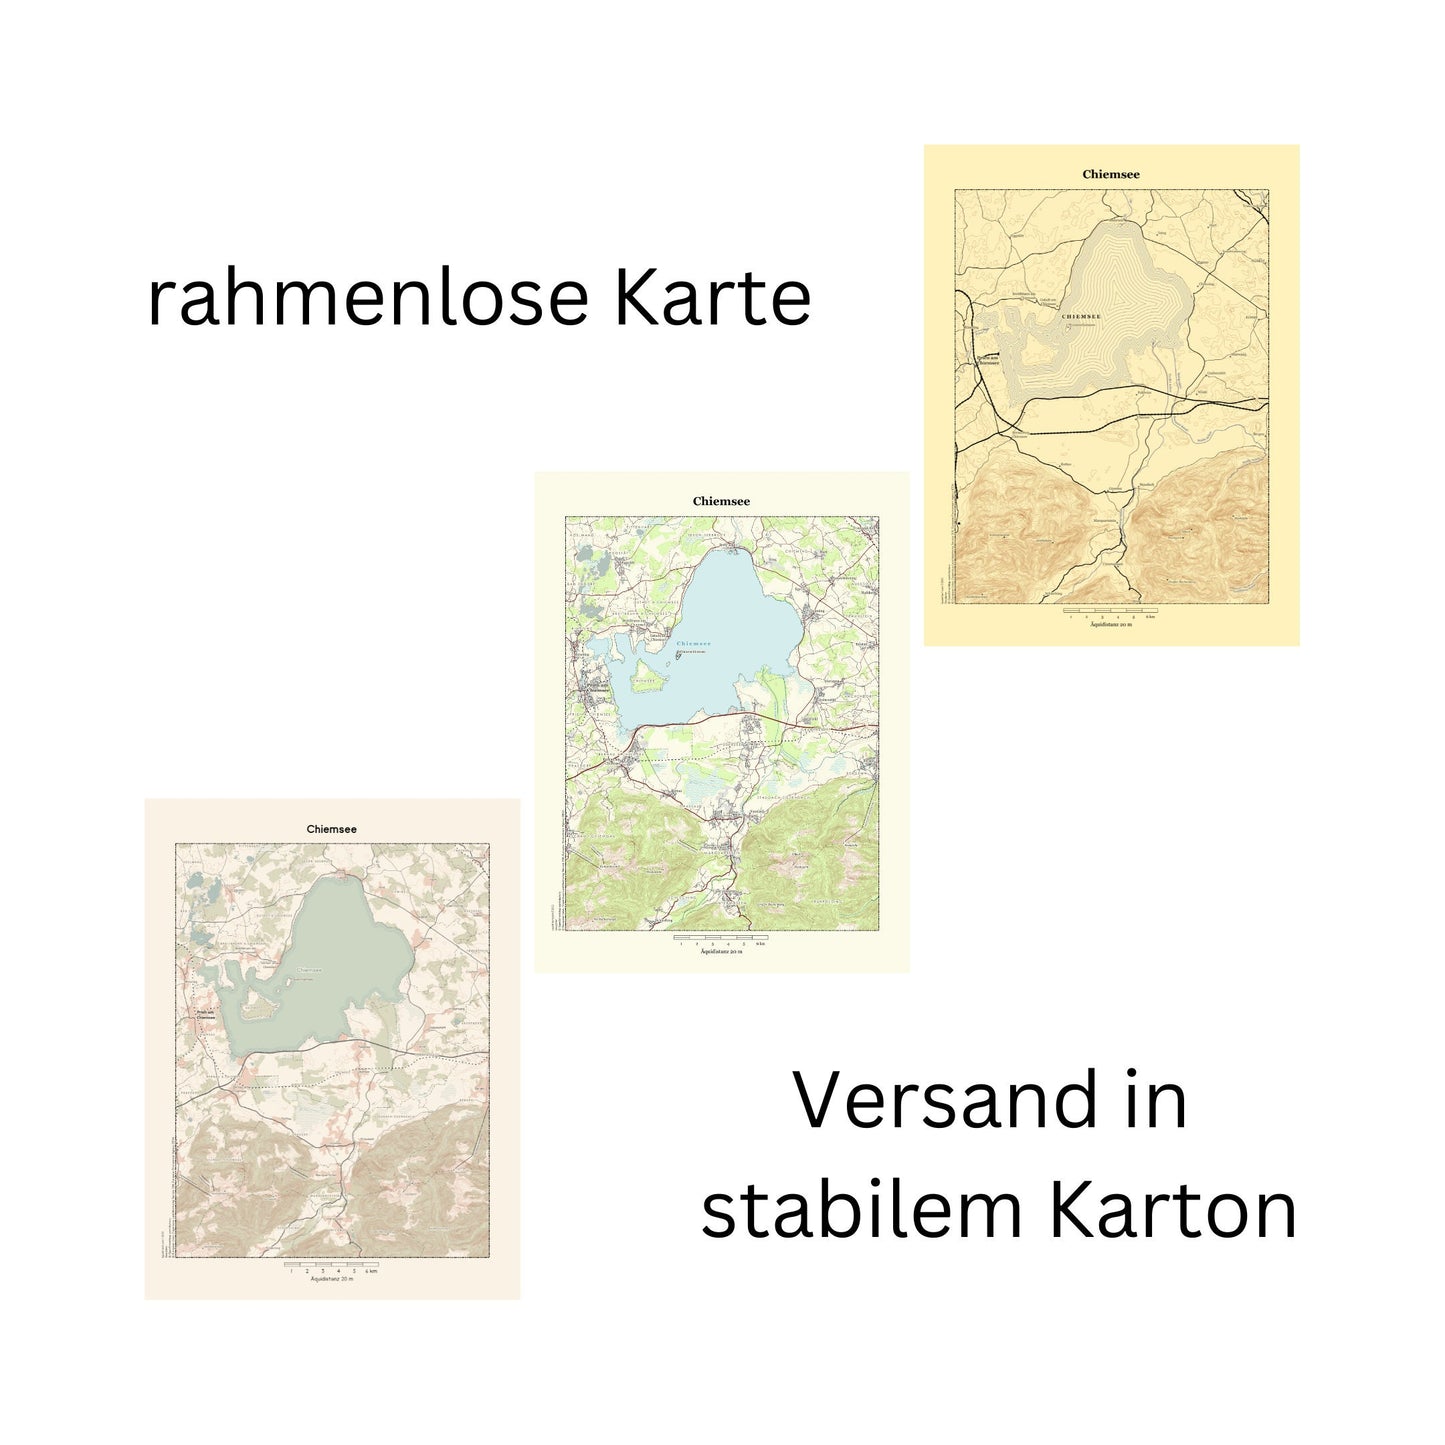 Chiemsee  - Vintage Landkarte Bayern